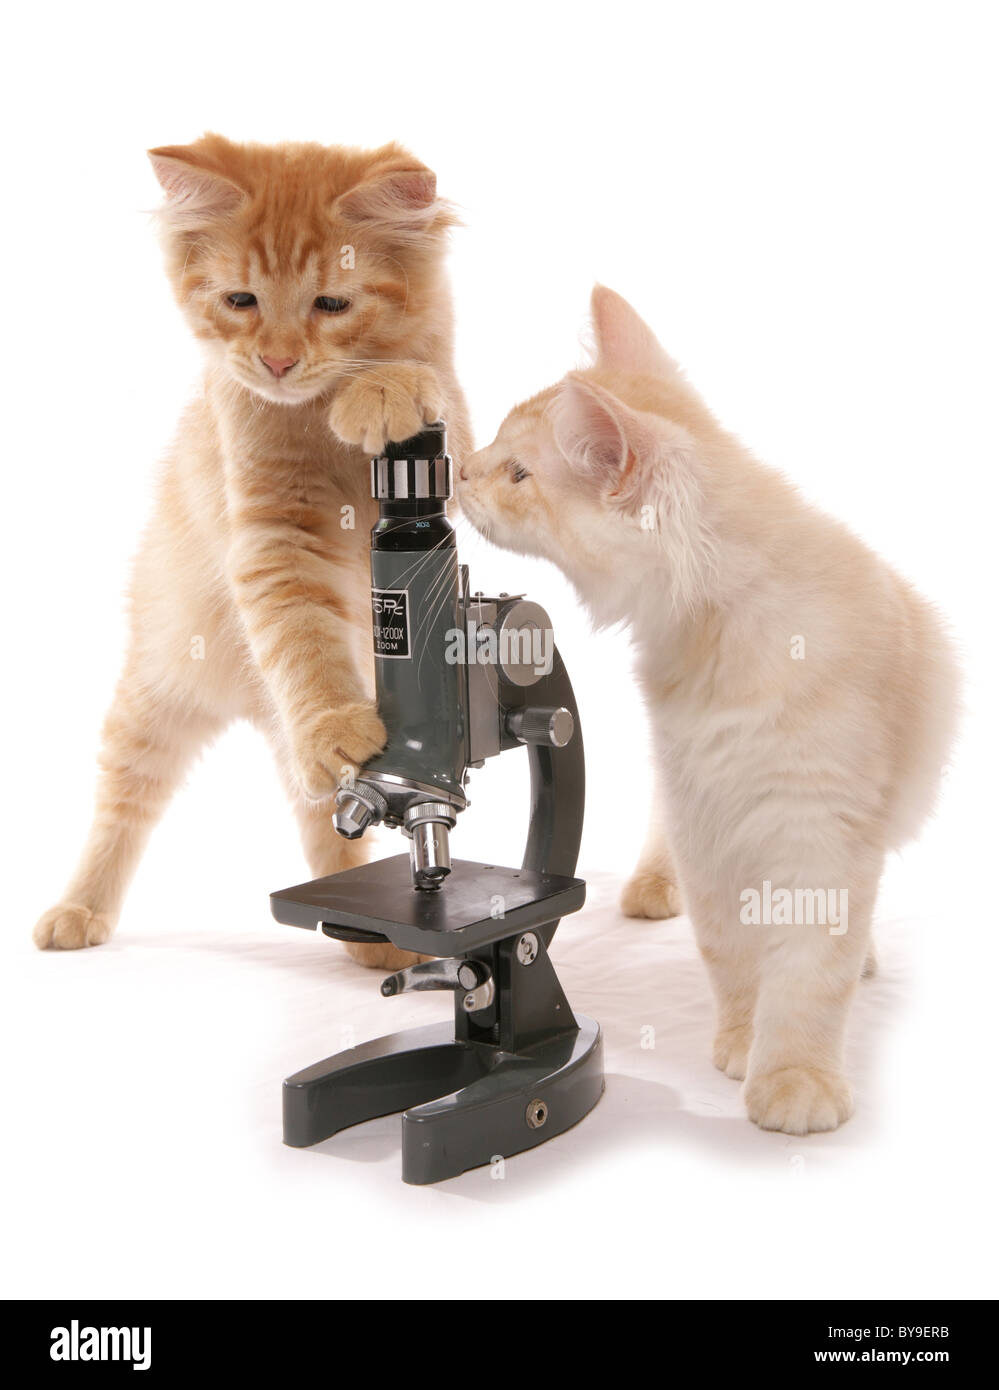 Gattini siberiani con microscopio 13 settimane vecchio ritratto in studio Foto Stock